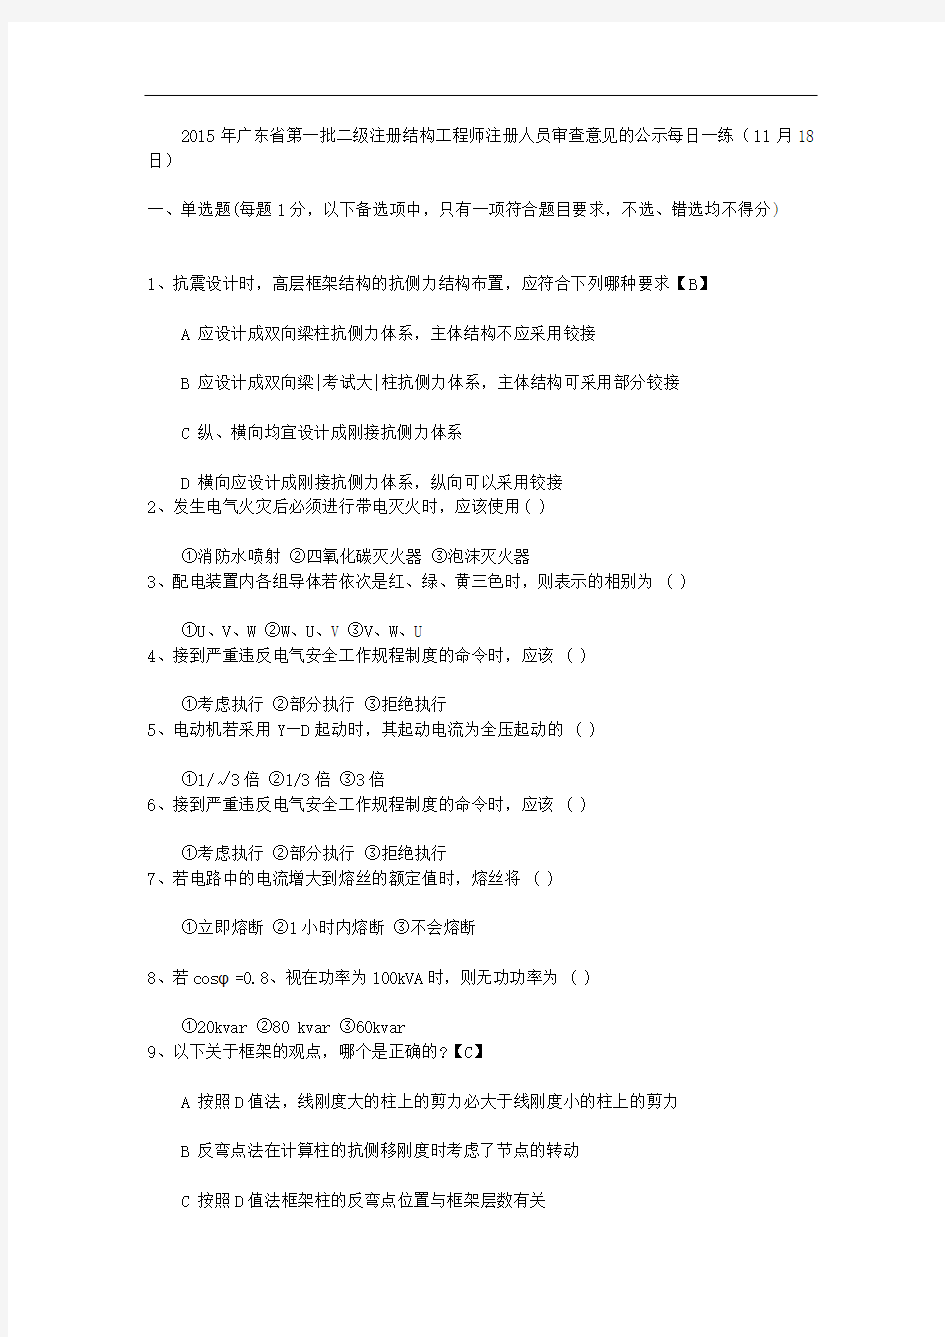 2015年广东省第一批二级注册结构工程师注册人员审查意见的公示每日一练(11月18日)